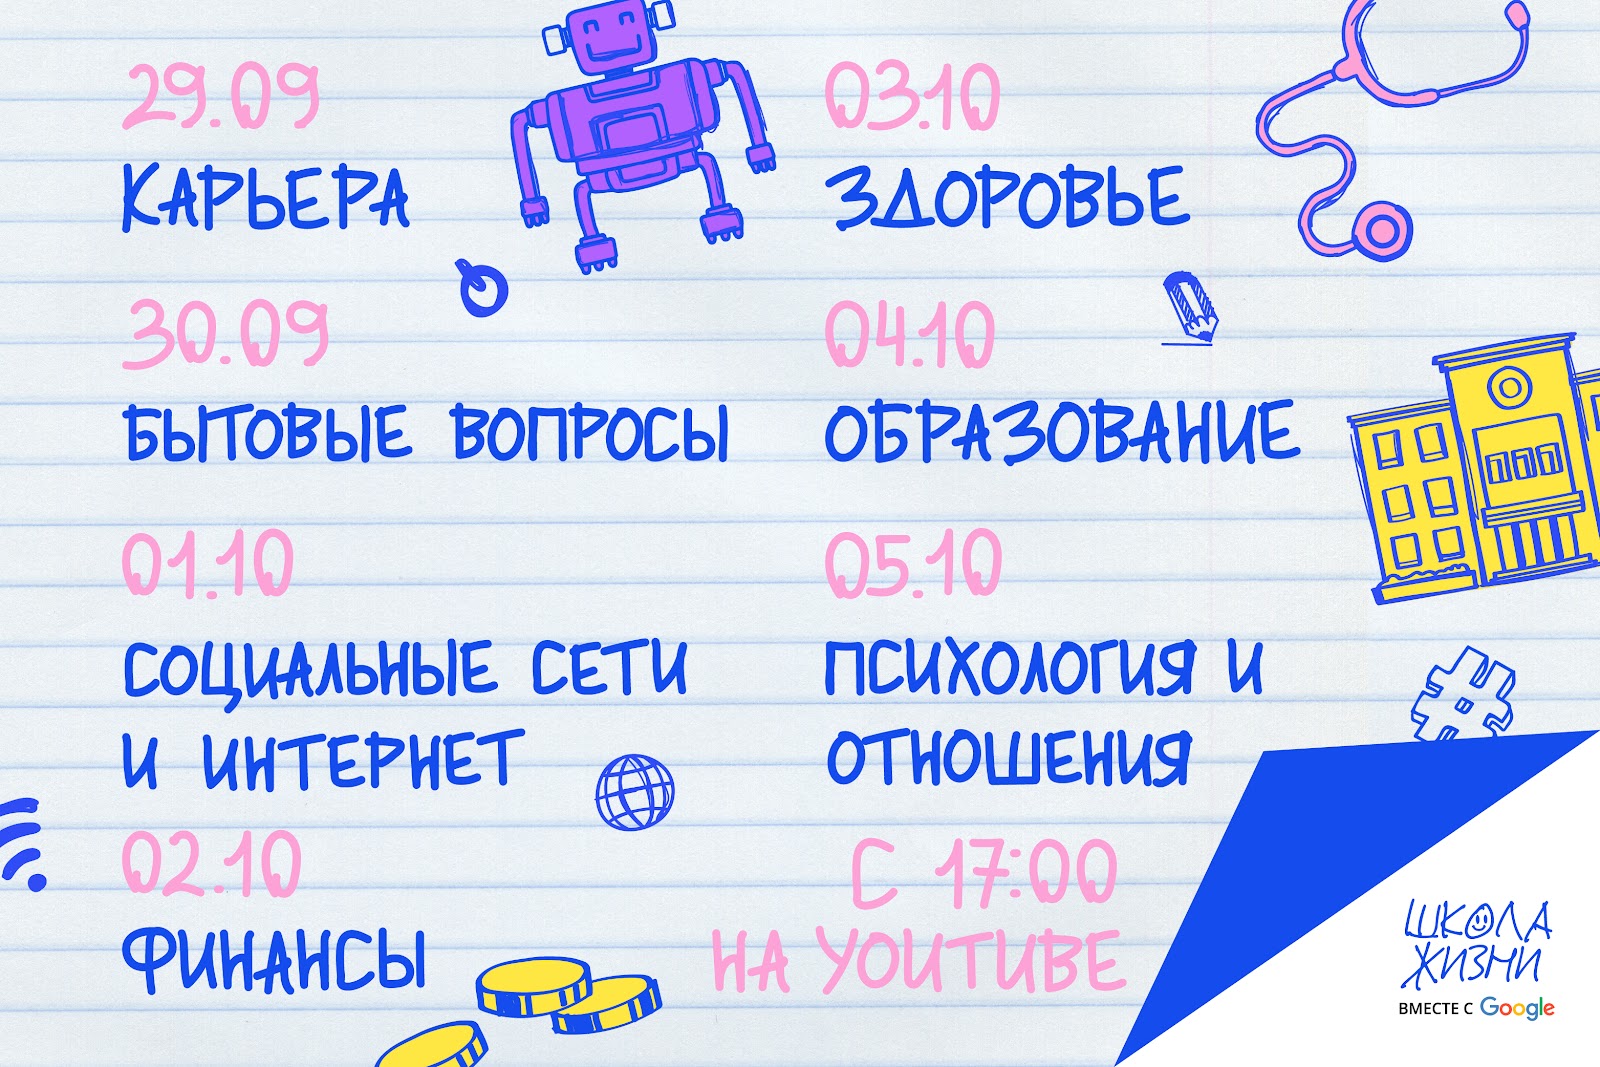 Официальный блог Google Россия: «Школа Жизни» на YouTube: строим карьеру мечты, решаем бытовые вопросы, управляем финансами и готовимся к взрослой жизни вместе с Google и экспертами